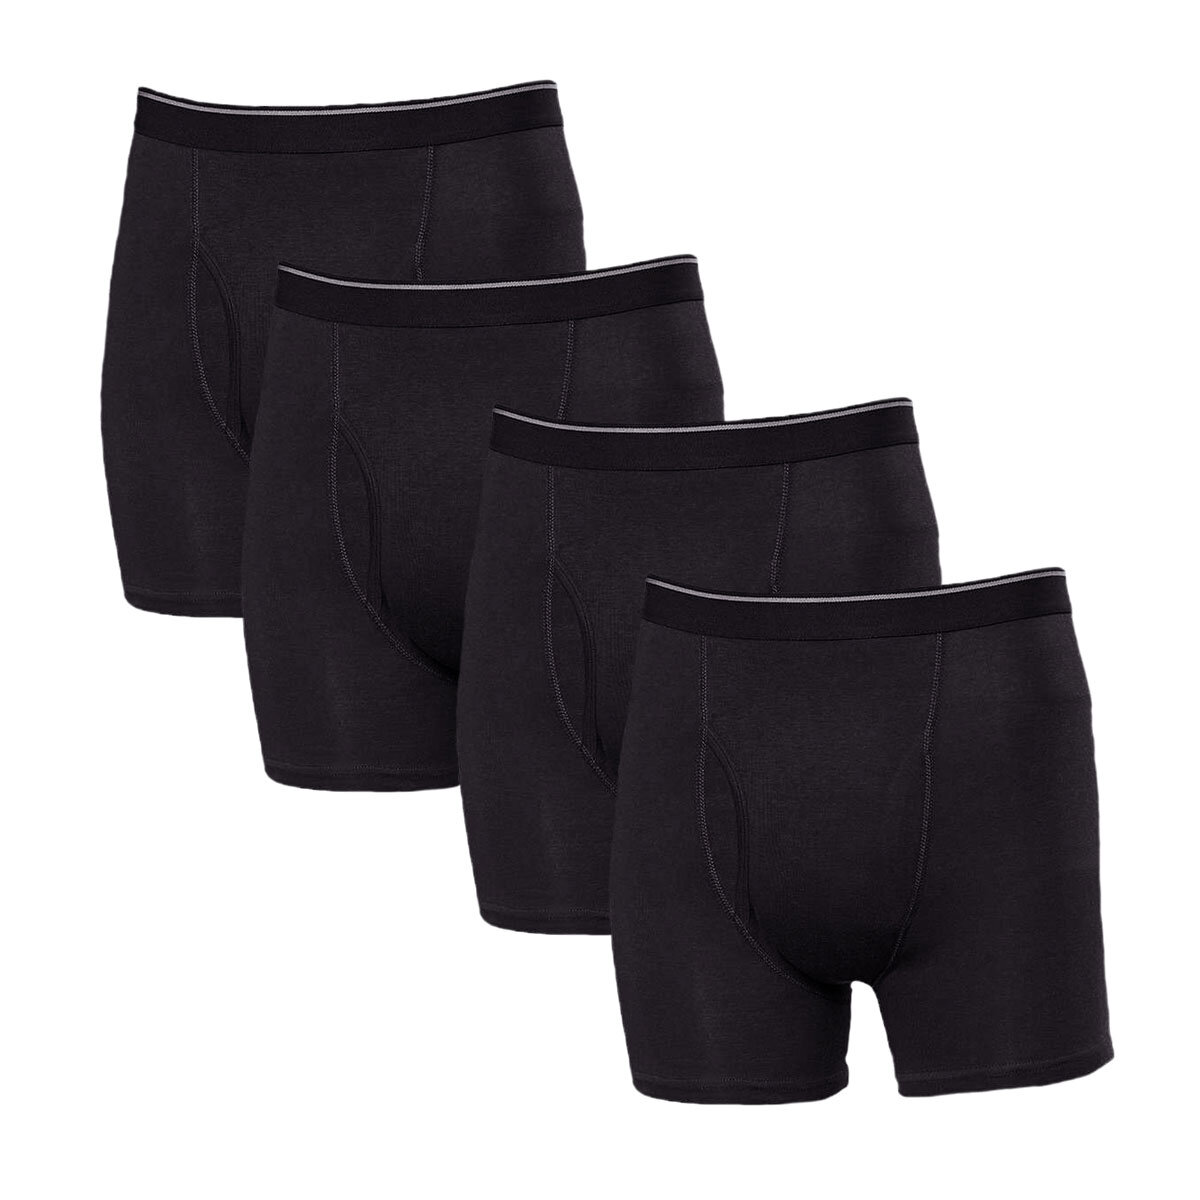 Kirkland Signature Men's 4 Pack Boxer Shorts, Large | Cos...